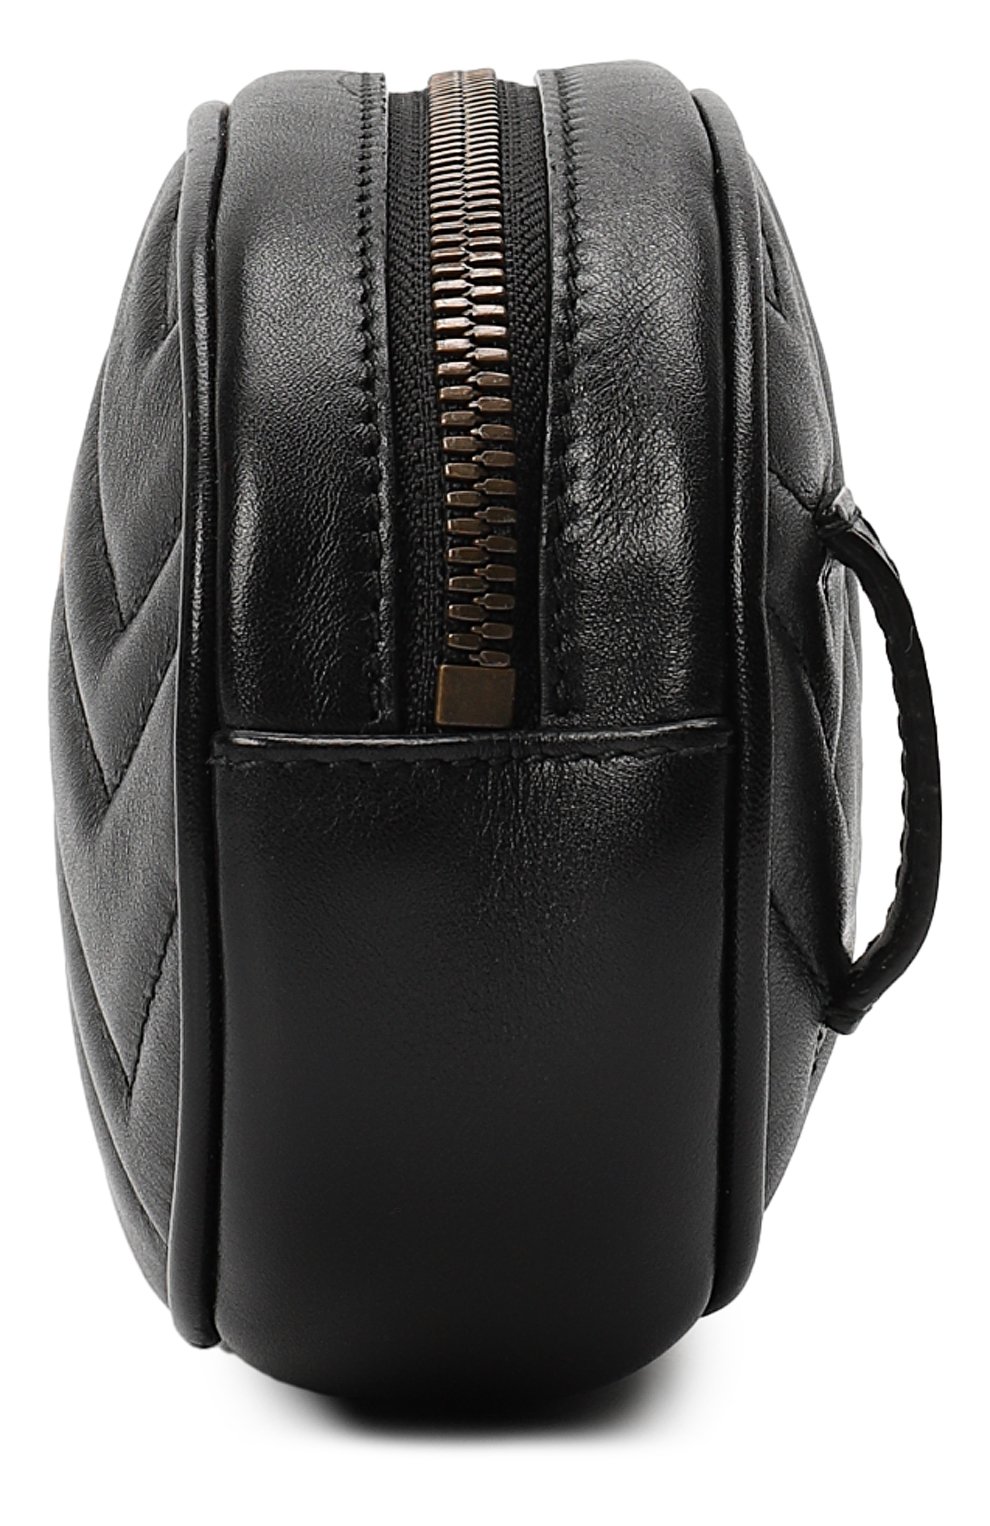 Поясная сумка GG Marmont | Gucci | Чёрный - 3